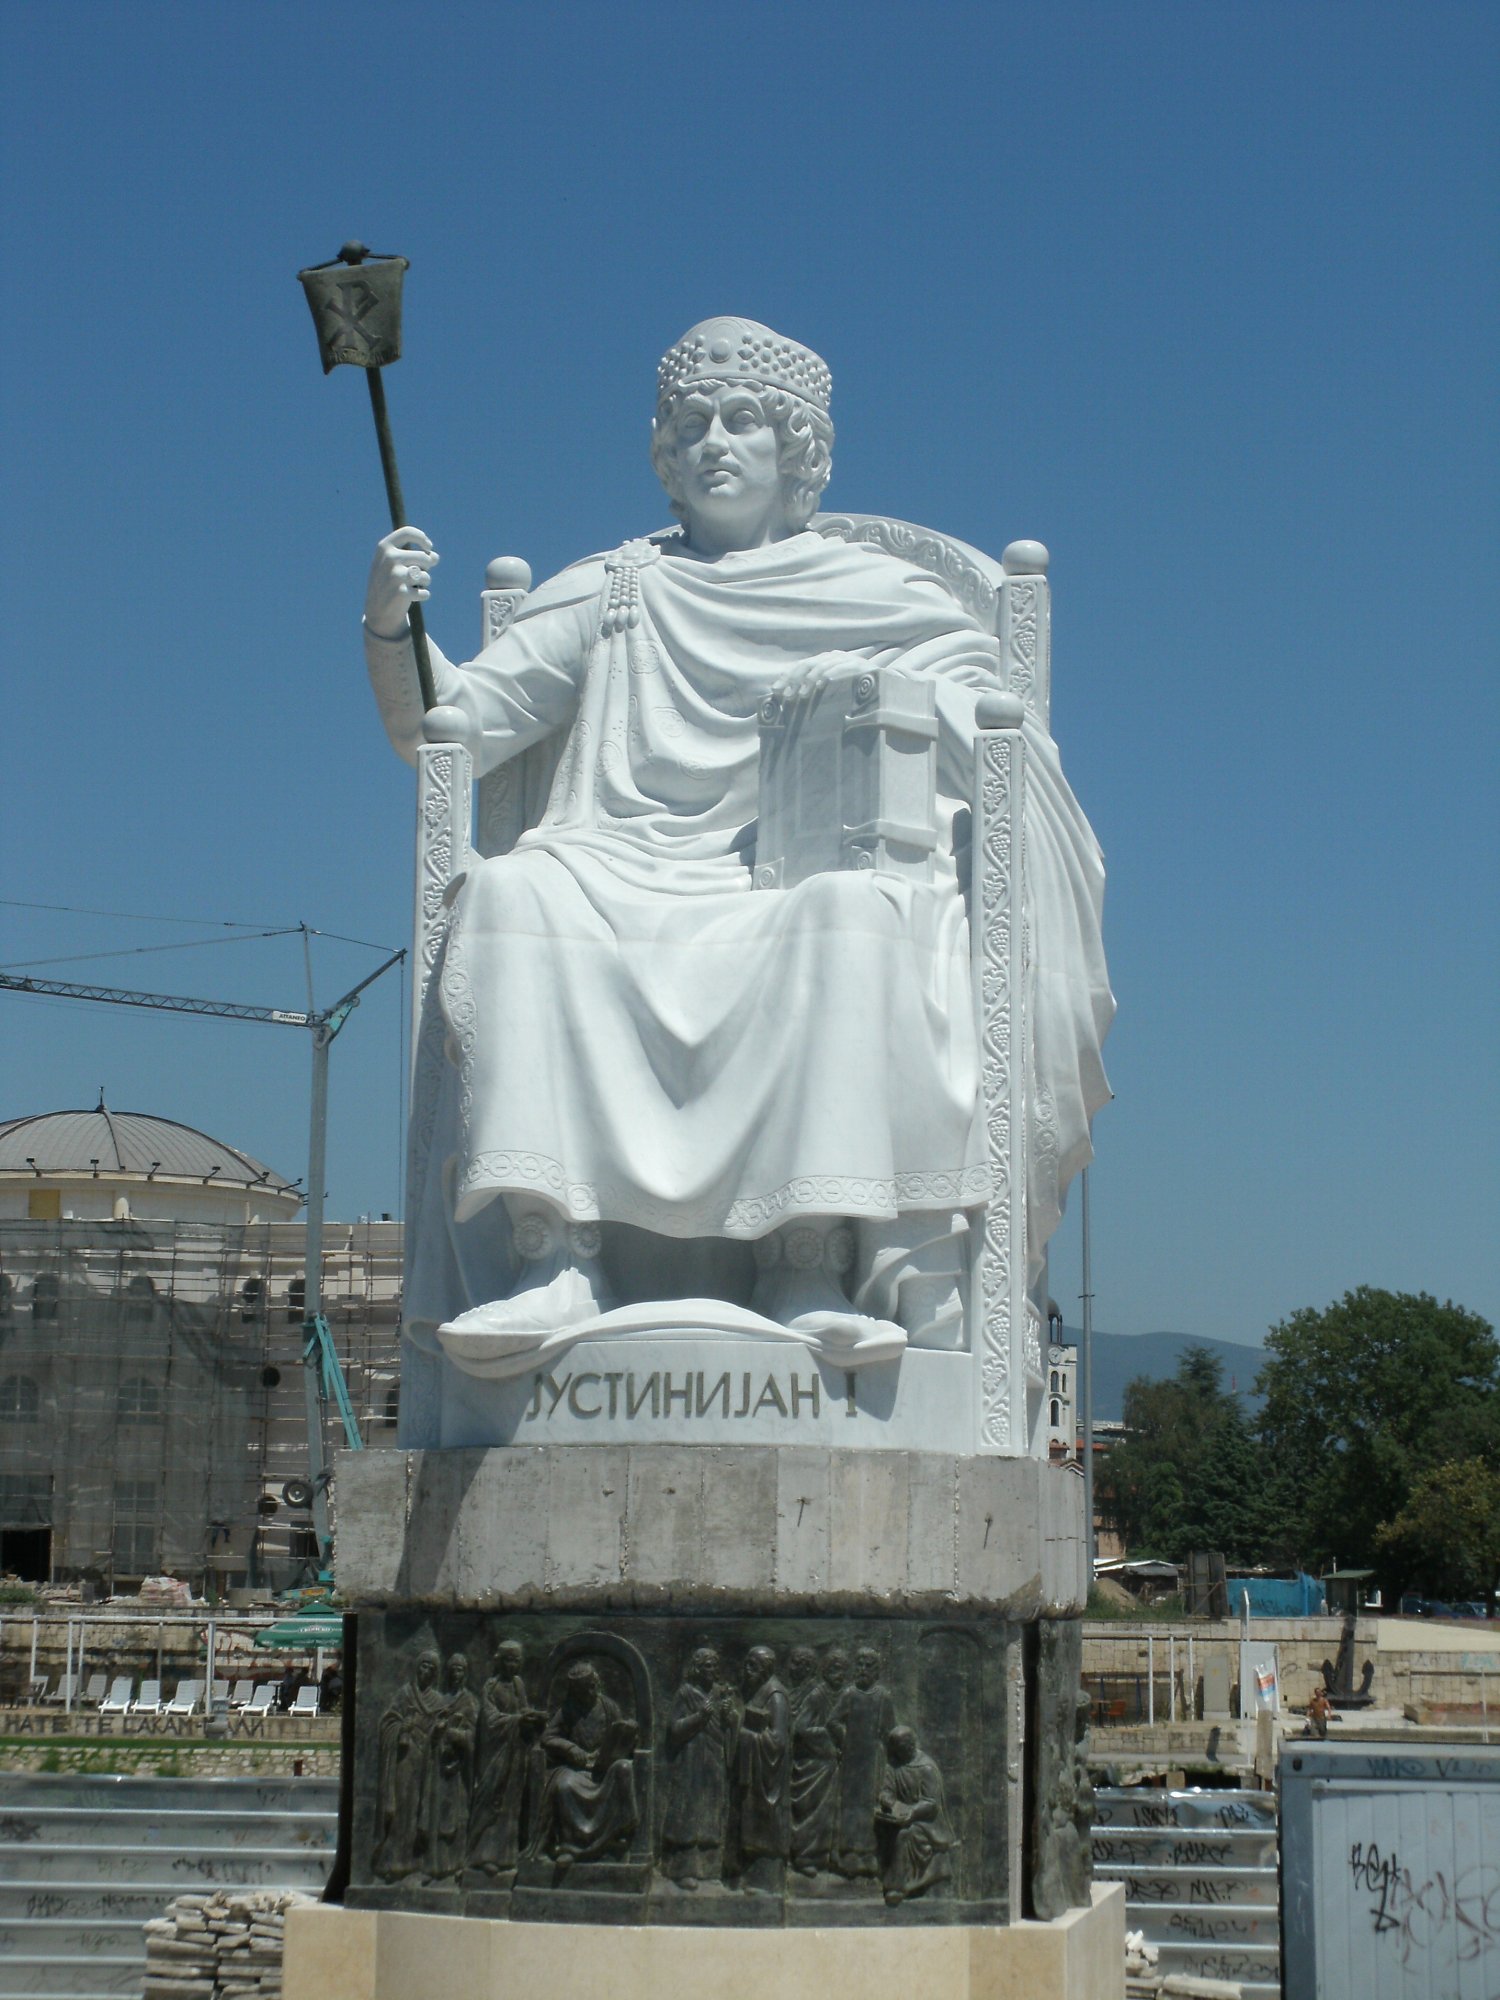 Justinian_I___2___Monuments_in_Skopje.jpg